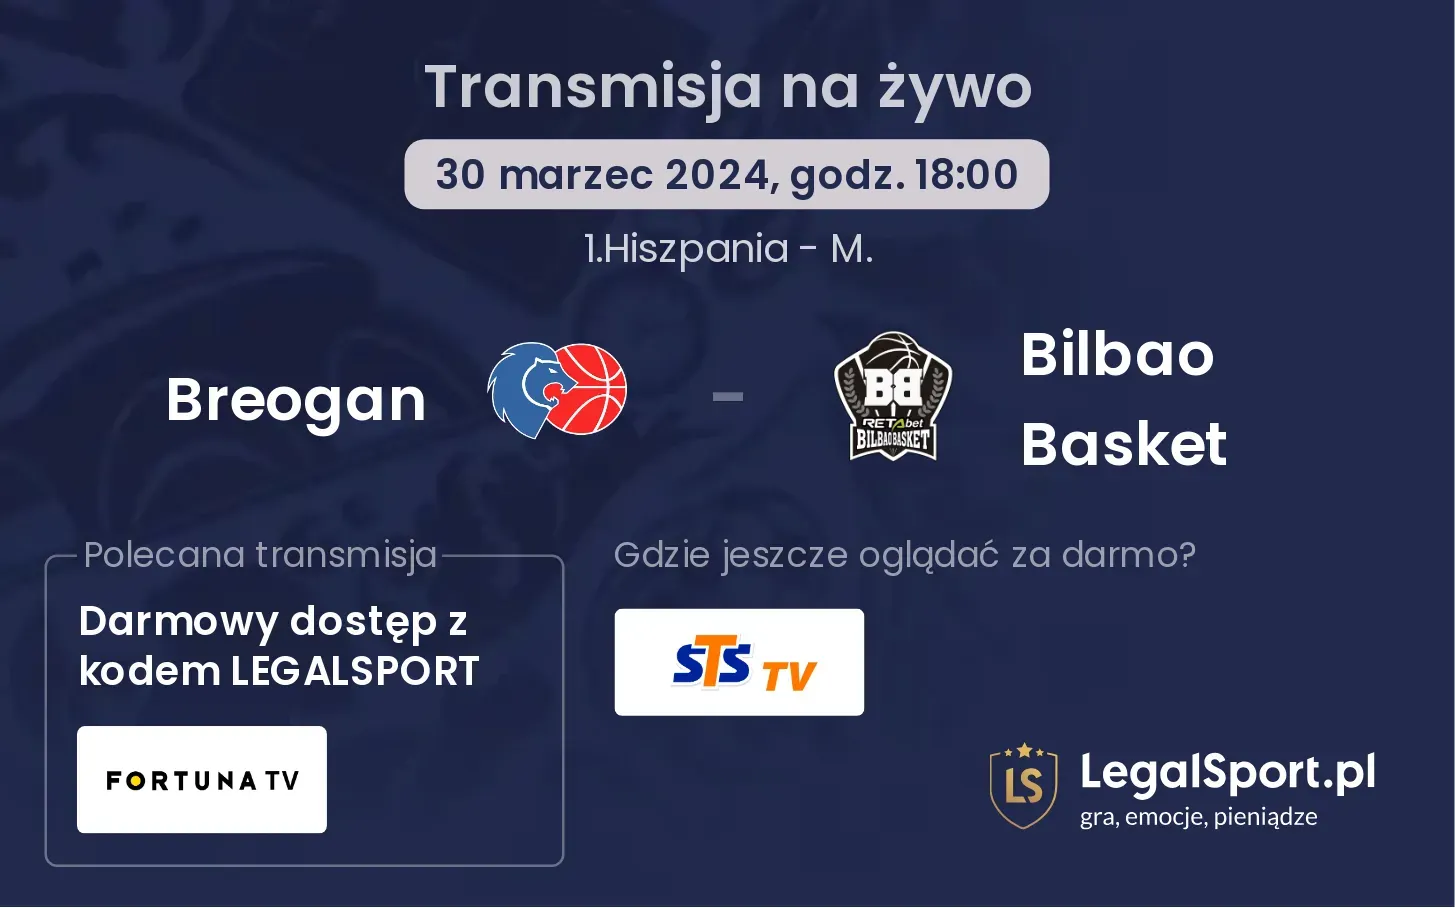 Breogan - Bilbao Basket transmisja na żywo